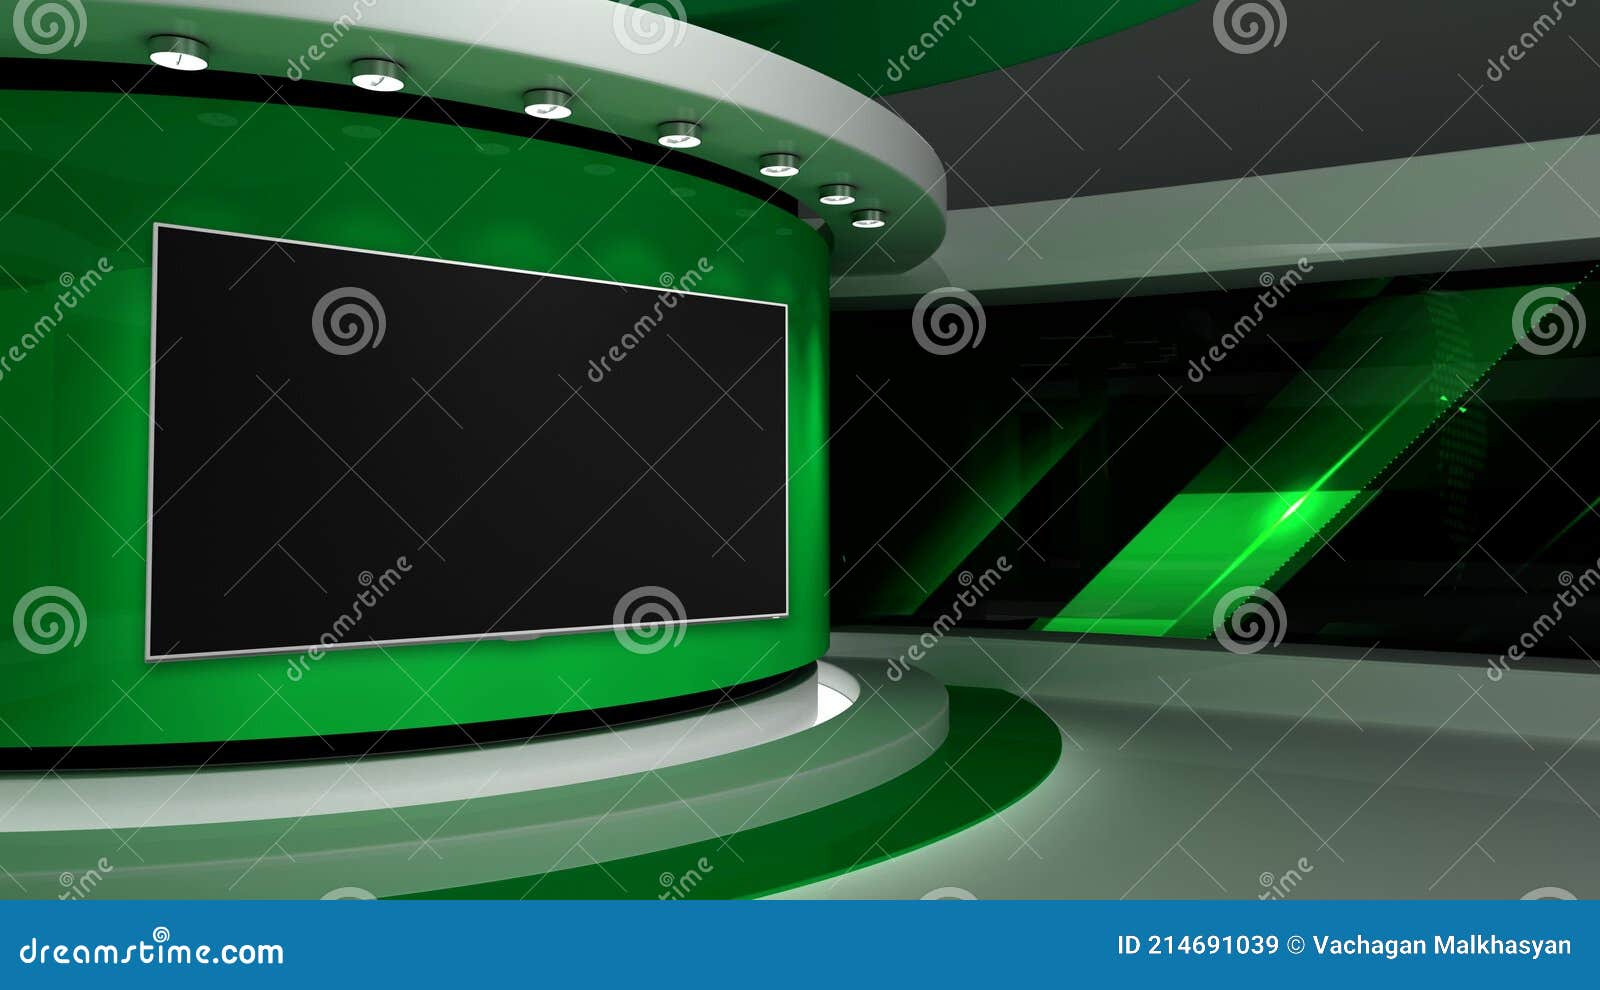 Với phòng thu TV màu xanh hiện đại chuyên nghiệp, bạn sẽ được trải nghiệm cảm giác làm việc trong một môi trường thực tế. Hãy tham khảo hình ảnh liên quan để hiểu rõ hơn về sự chuyên nghiệp và tiện nghi của phòng thu này.